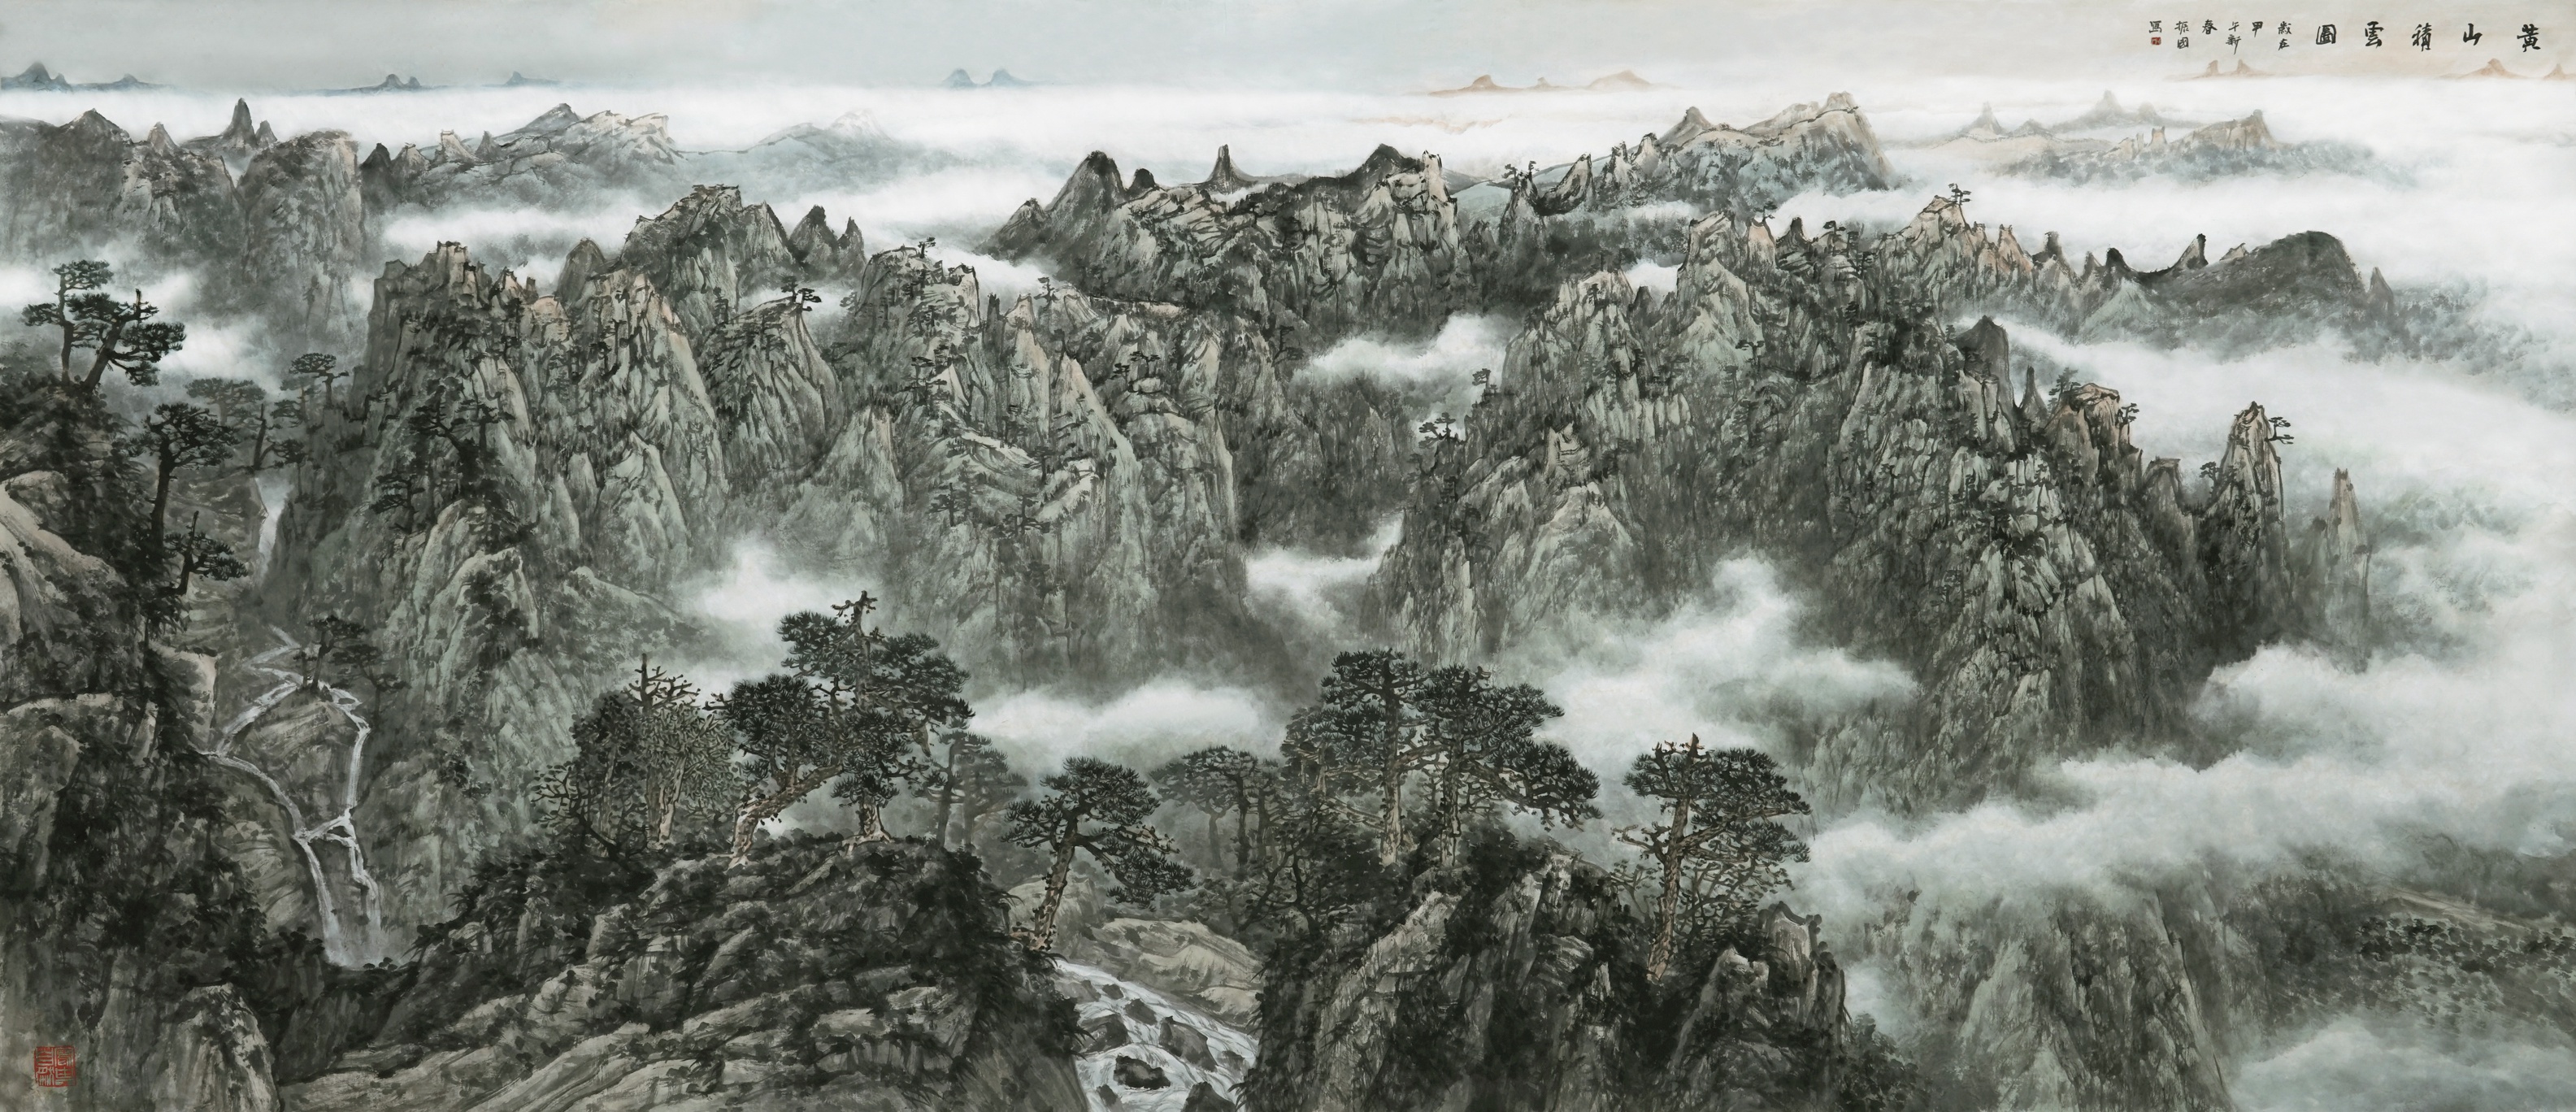 程振国笔下壮美的山水画卷是一张张文化鲜明的外交名片